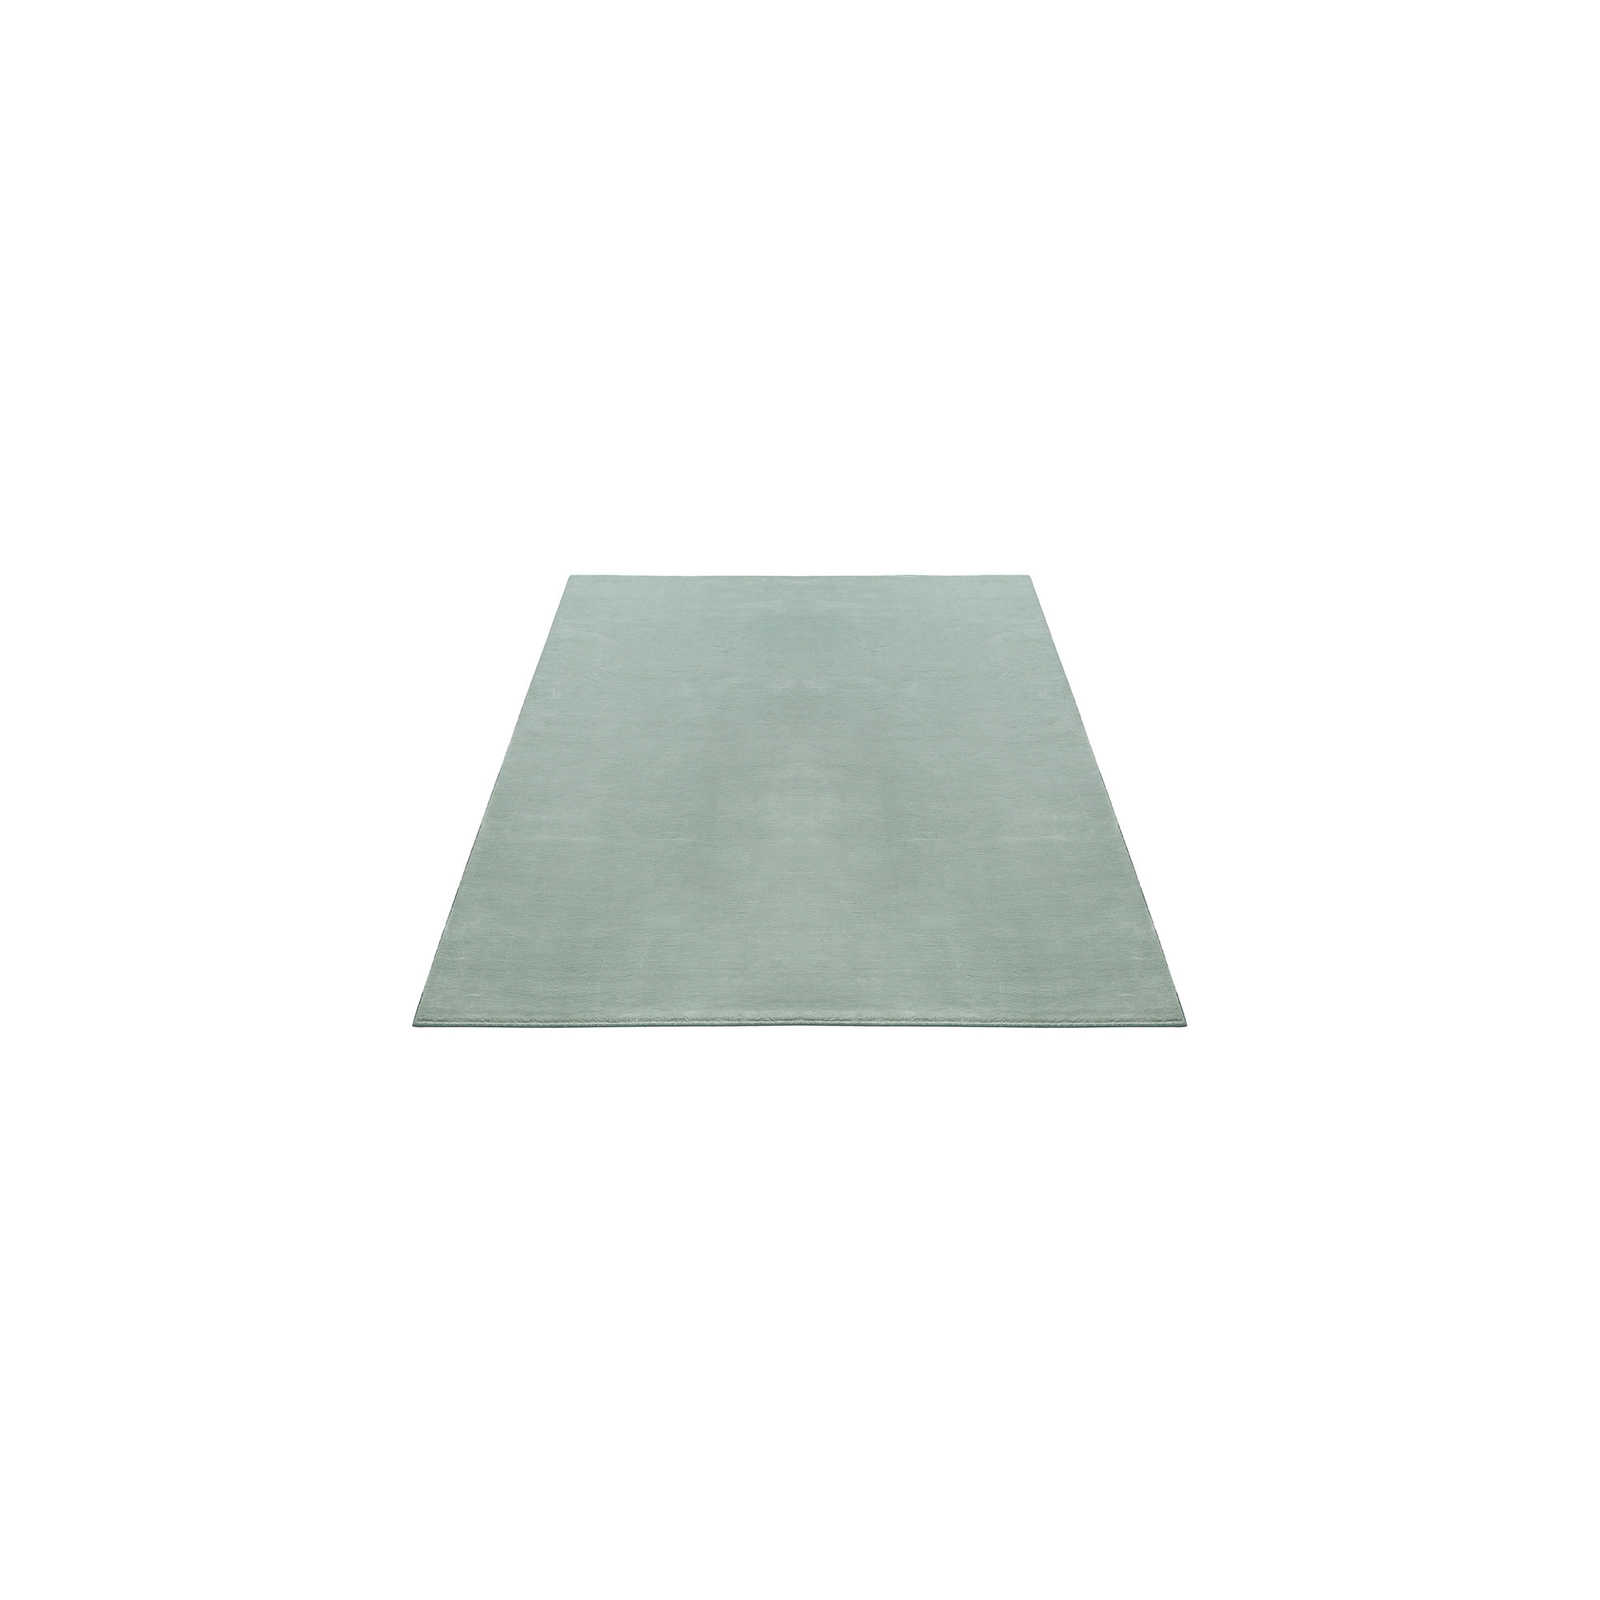 Zacht hoogpolig tapijt in zachtgroen - 150 x 80 cm
